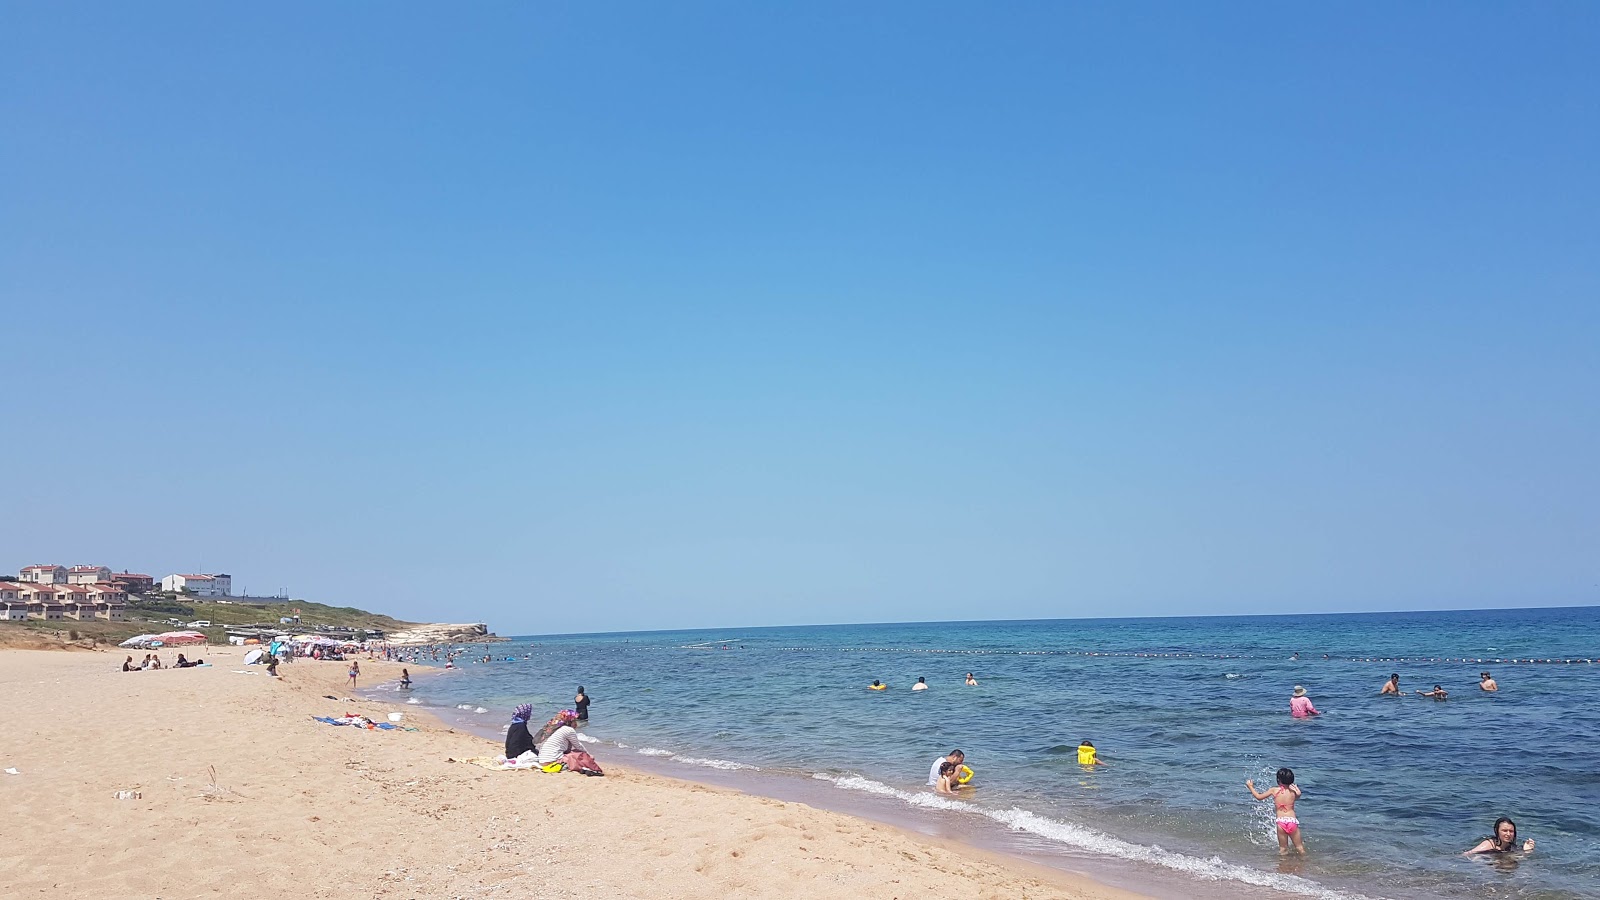 Fotografie cu Sahilkoy Halk Plaji cu plajă spațioasă